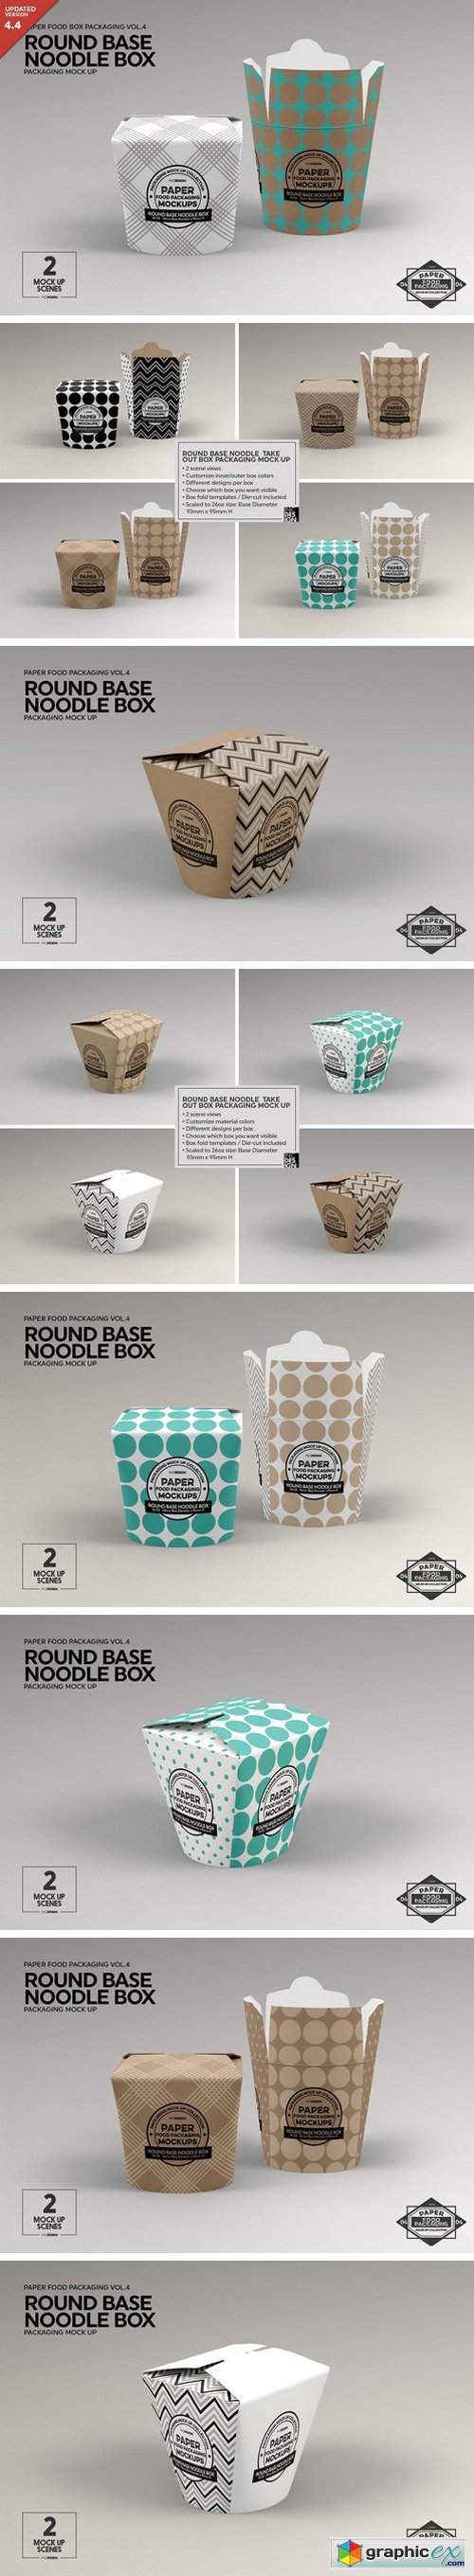 Round Base Noodle Box Mockup